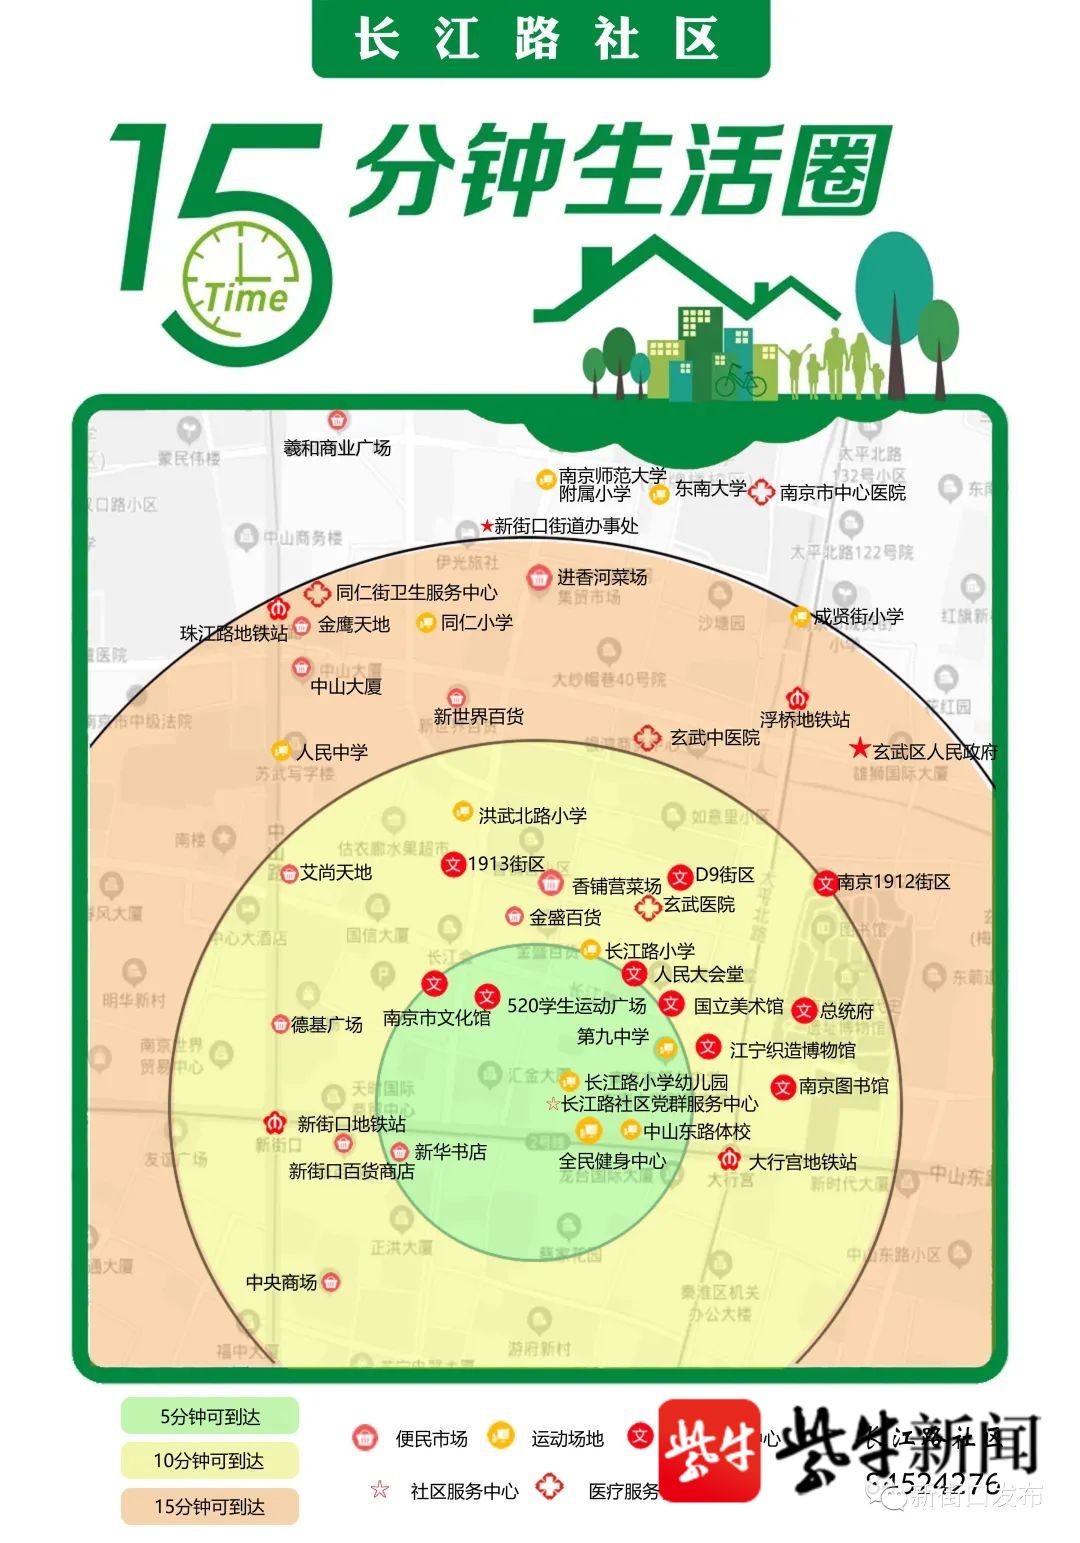 南京新街口定位图图片